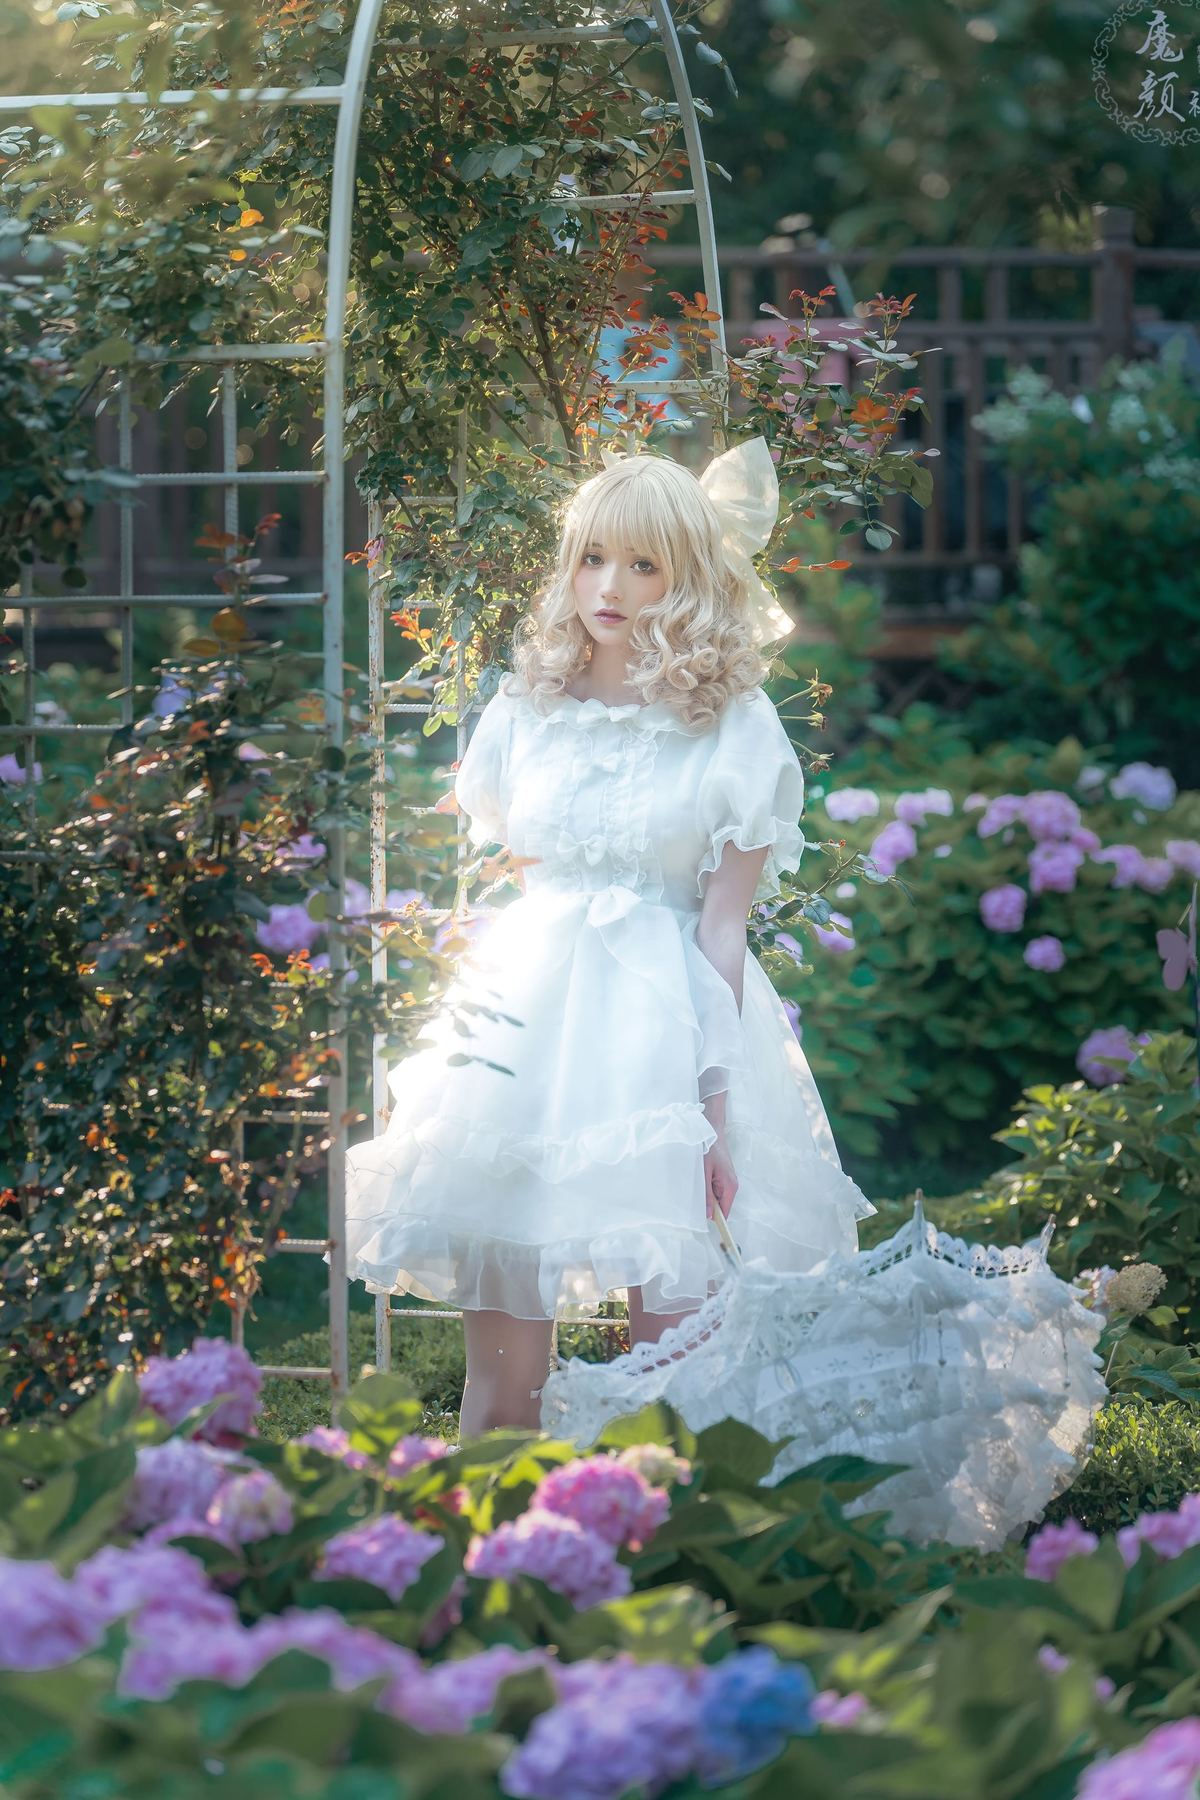 一个小女孩穿着一件白色连衣裙站在一个秋千上 在一个花坛中。